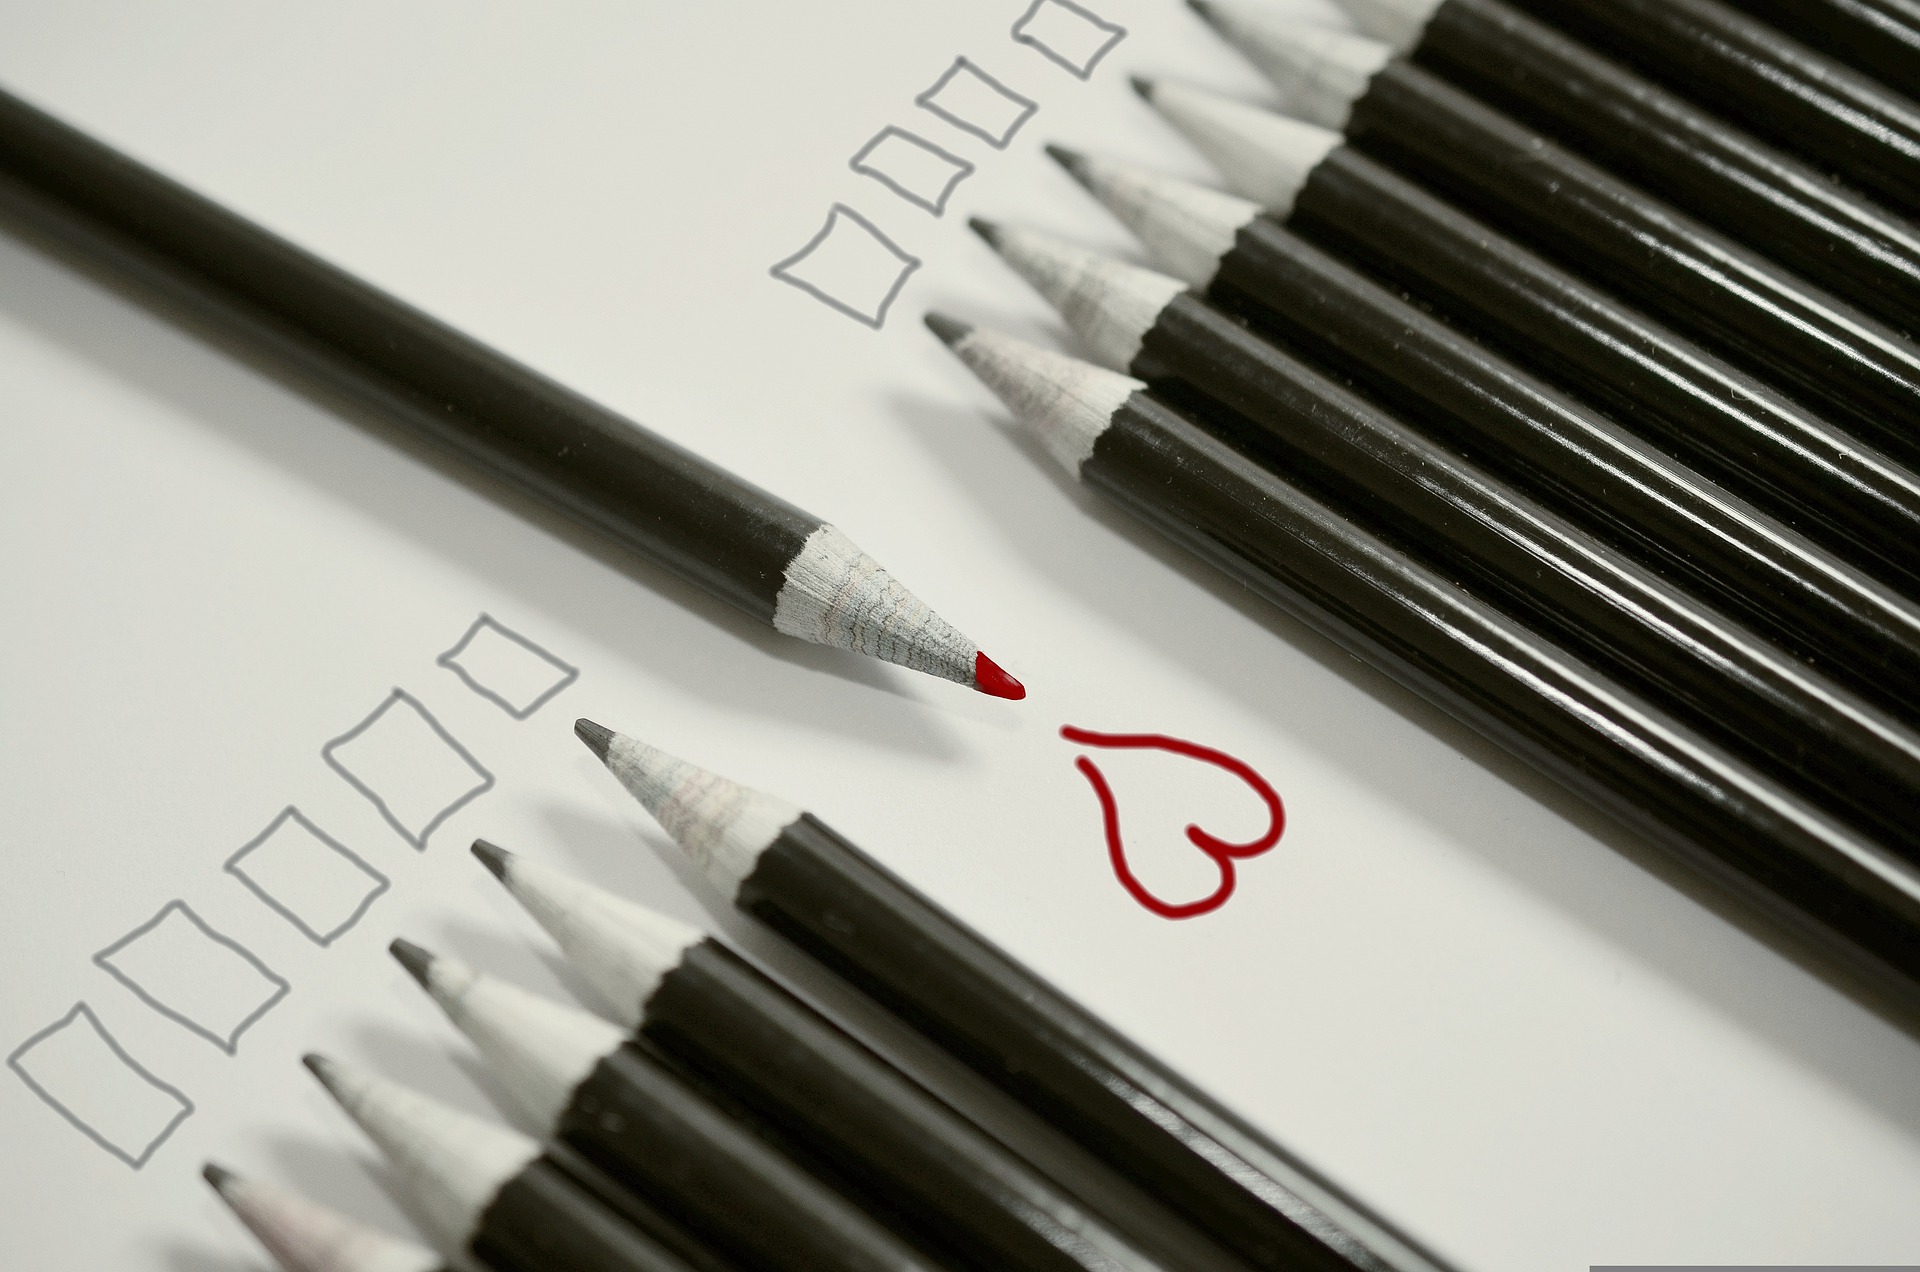 Toda una fila de lápices negros señalan a unos cuadrados que supuestamente han escrito. En el centro de la fila irrumpe en dirección contraria un lápiz rojo señalando a un corazón rojo que supuestamente ha escrito ese lápiz rojo.